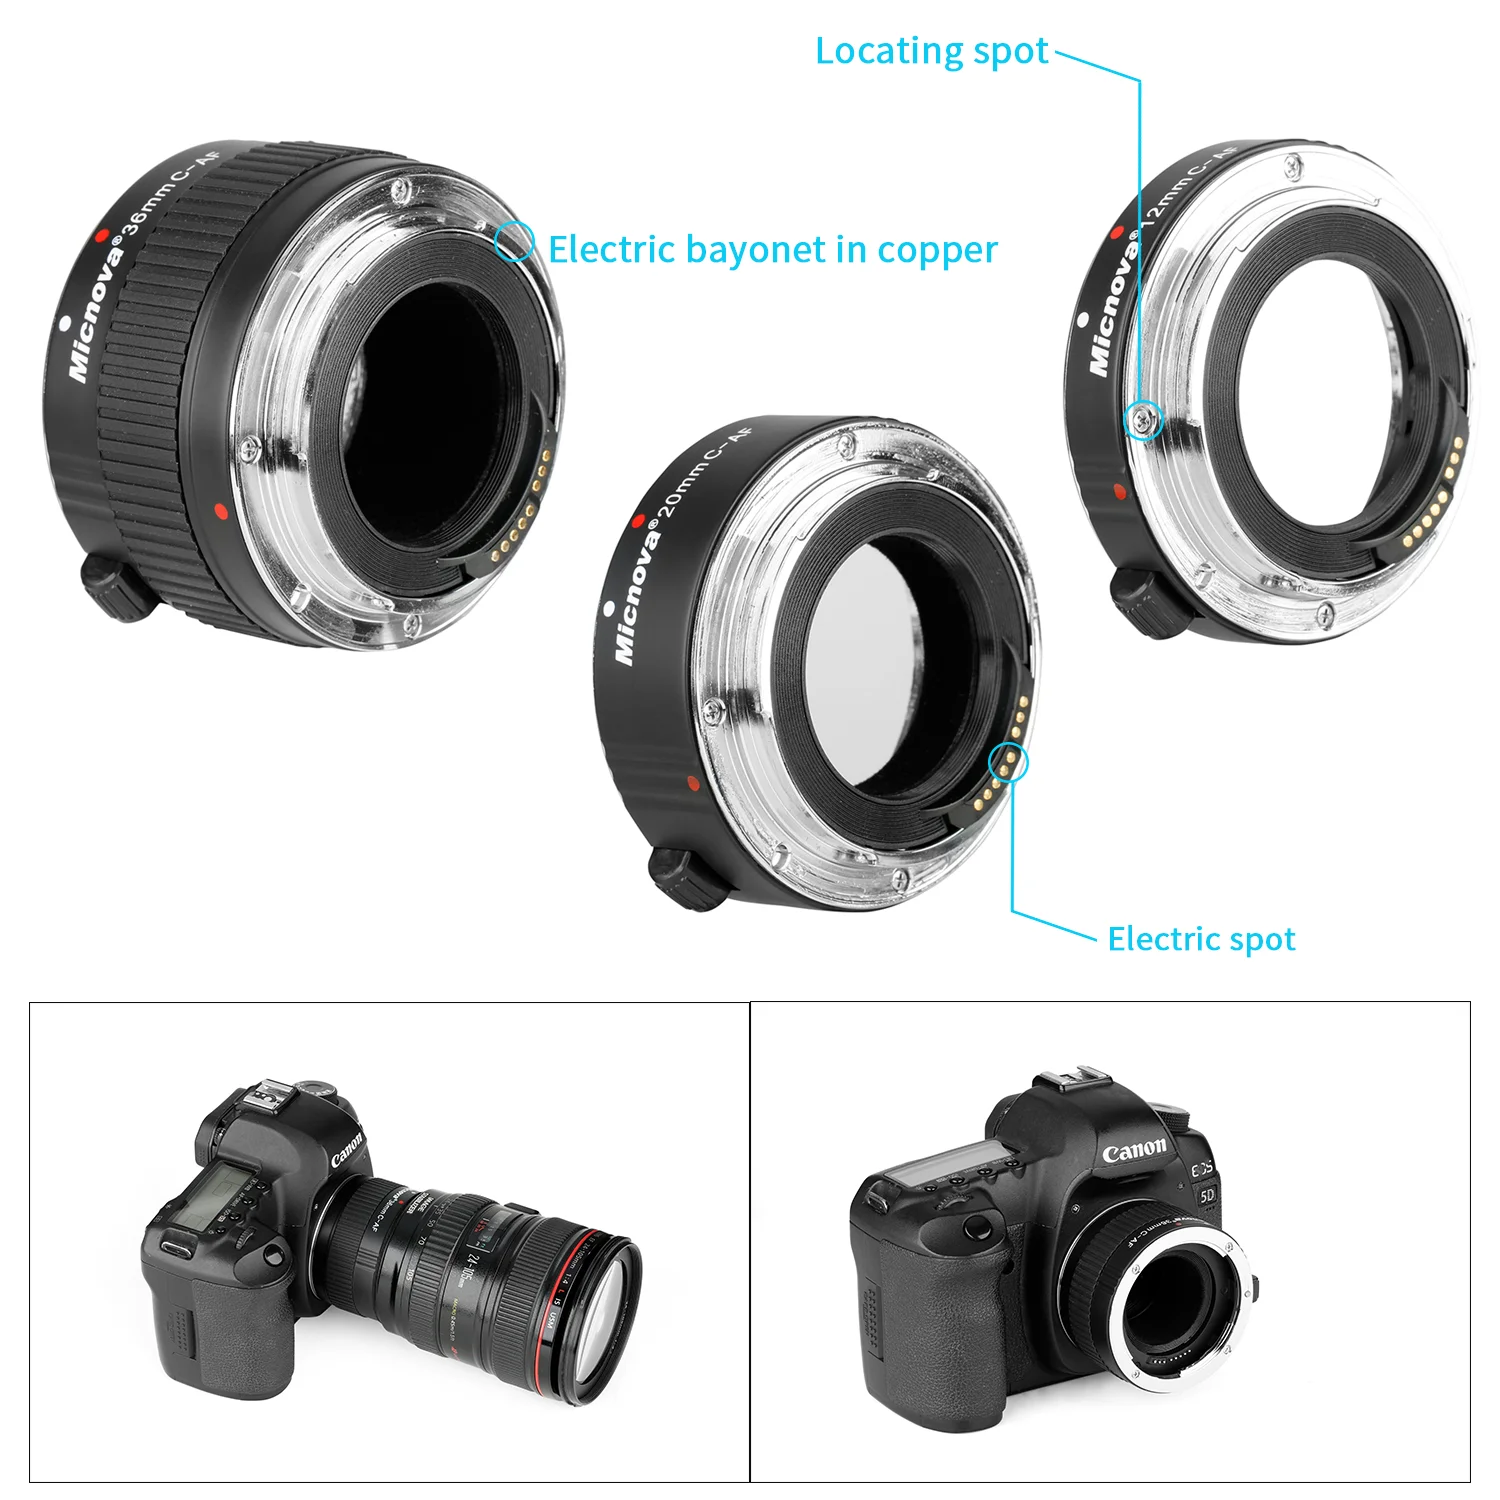 Micnova KK-C68 Macro Lens Tube Extension for Canon DSLR EOS EF & EF-S Mount 5D2 5D3 6D 650D 750D Film Camera 12mm 20mm 36mm Tube enlarge